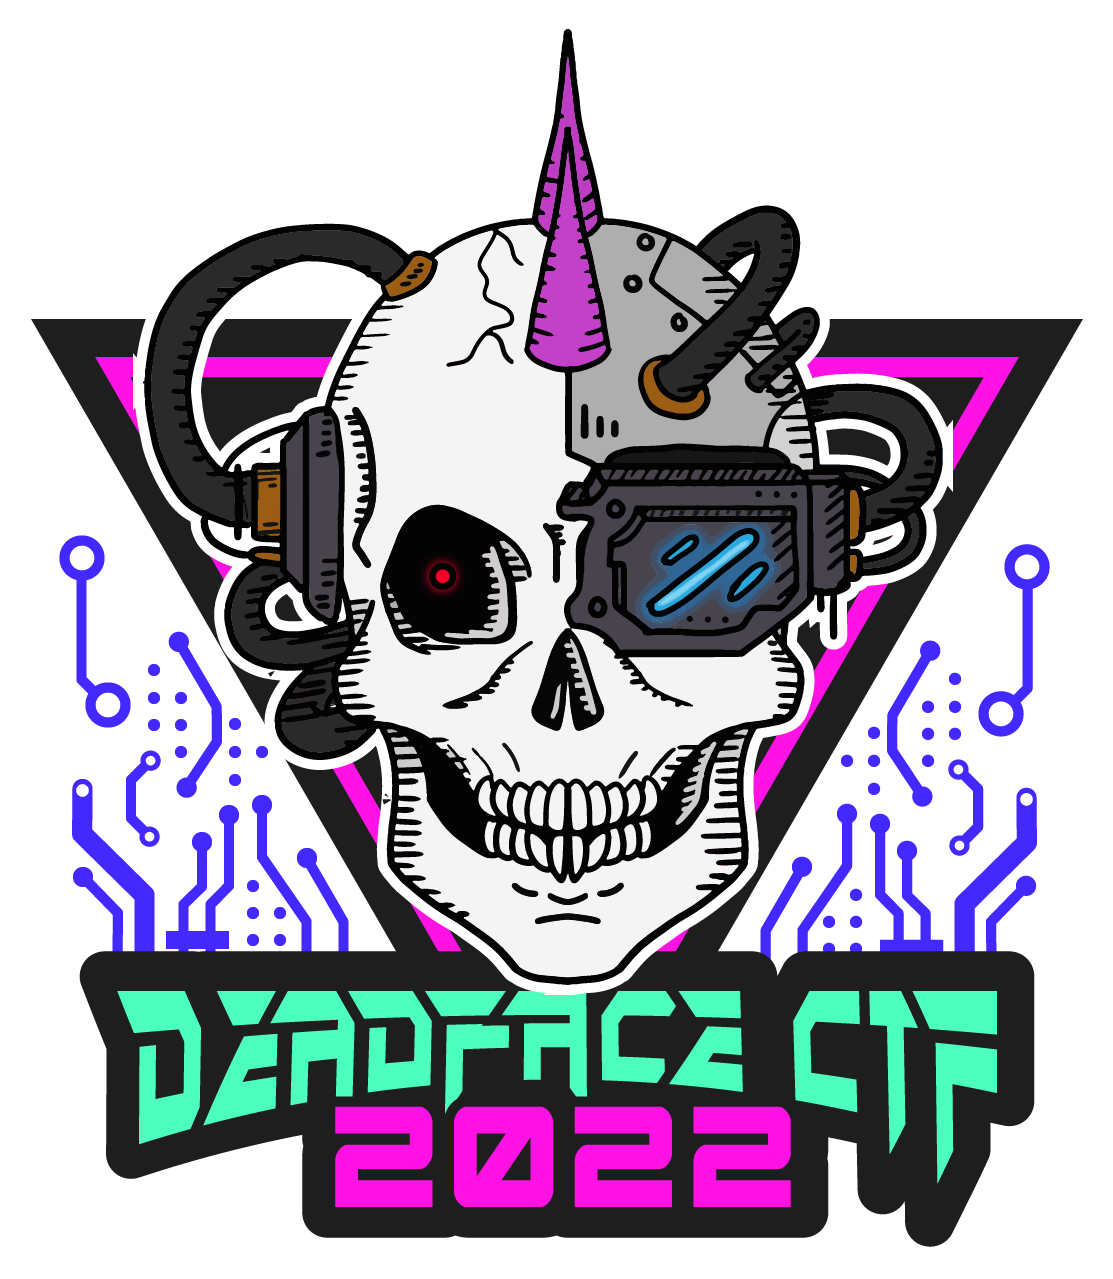 DEADFACE2022 Logo